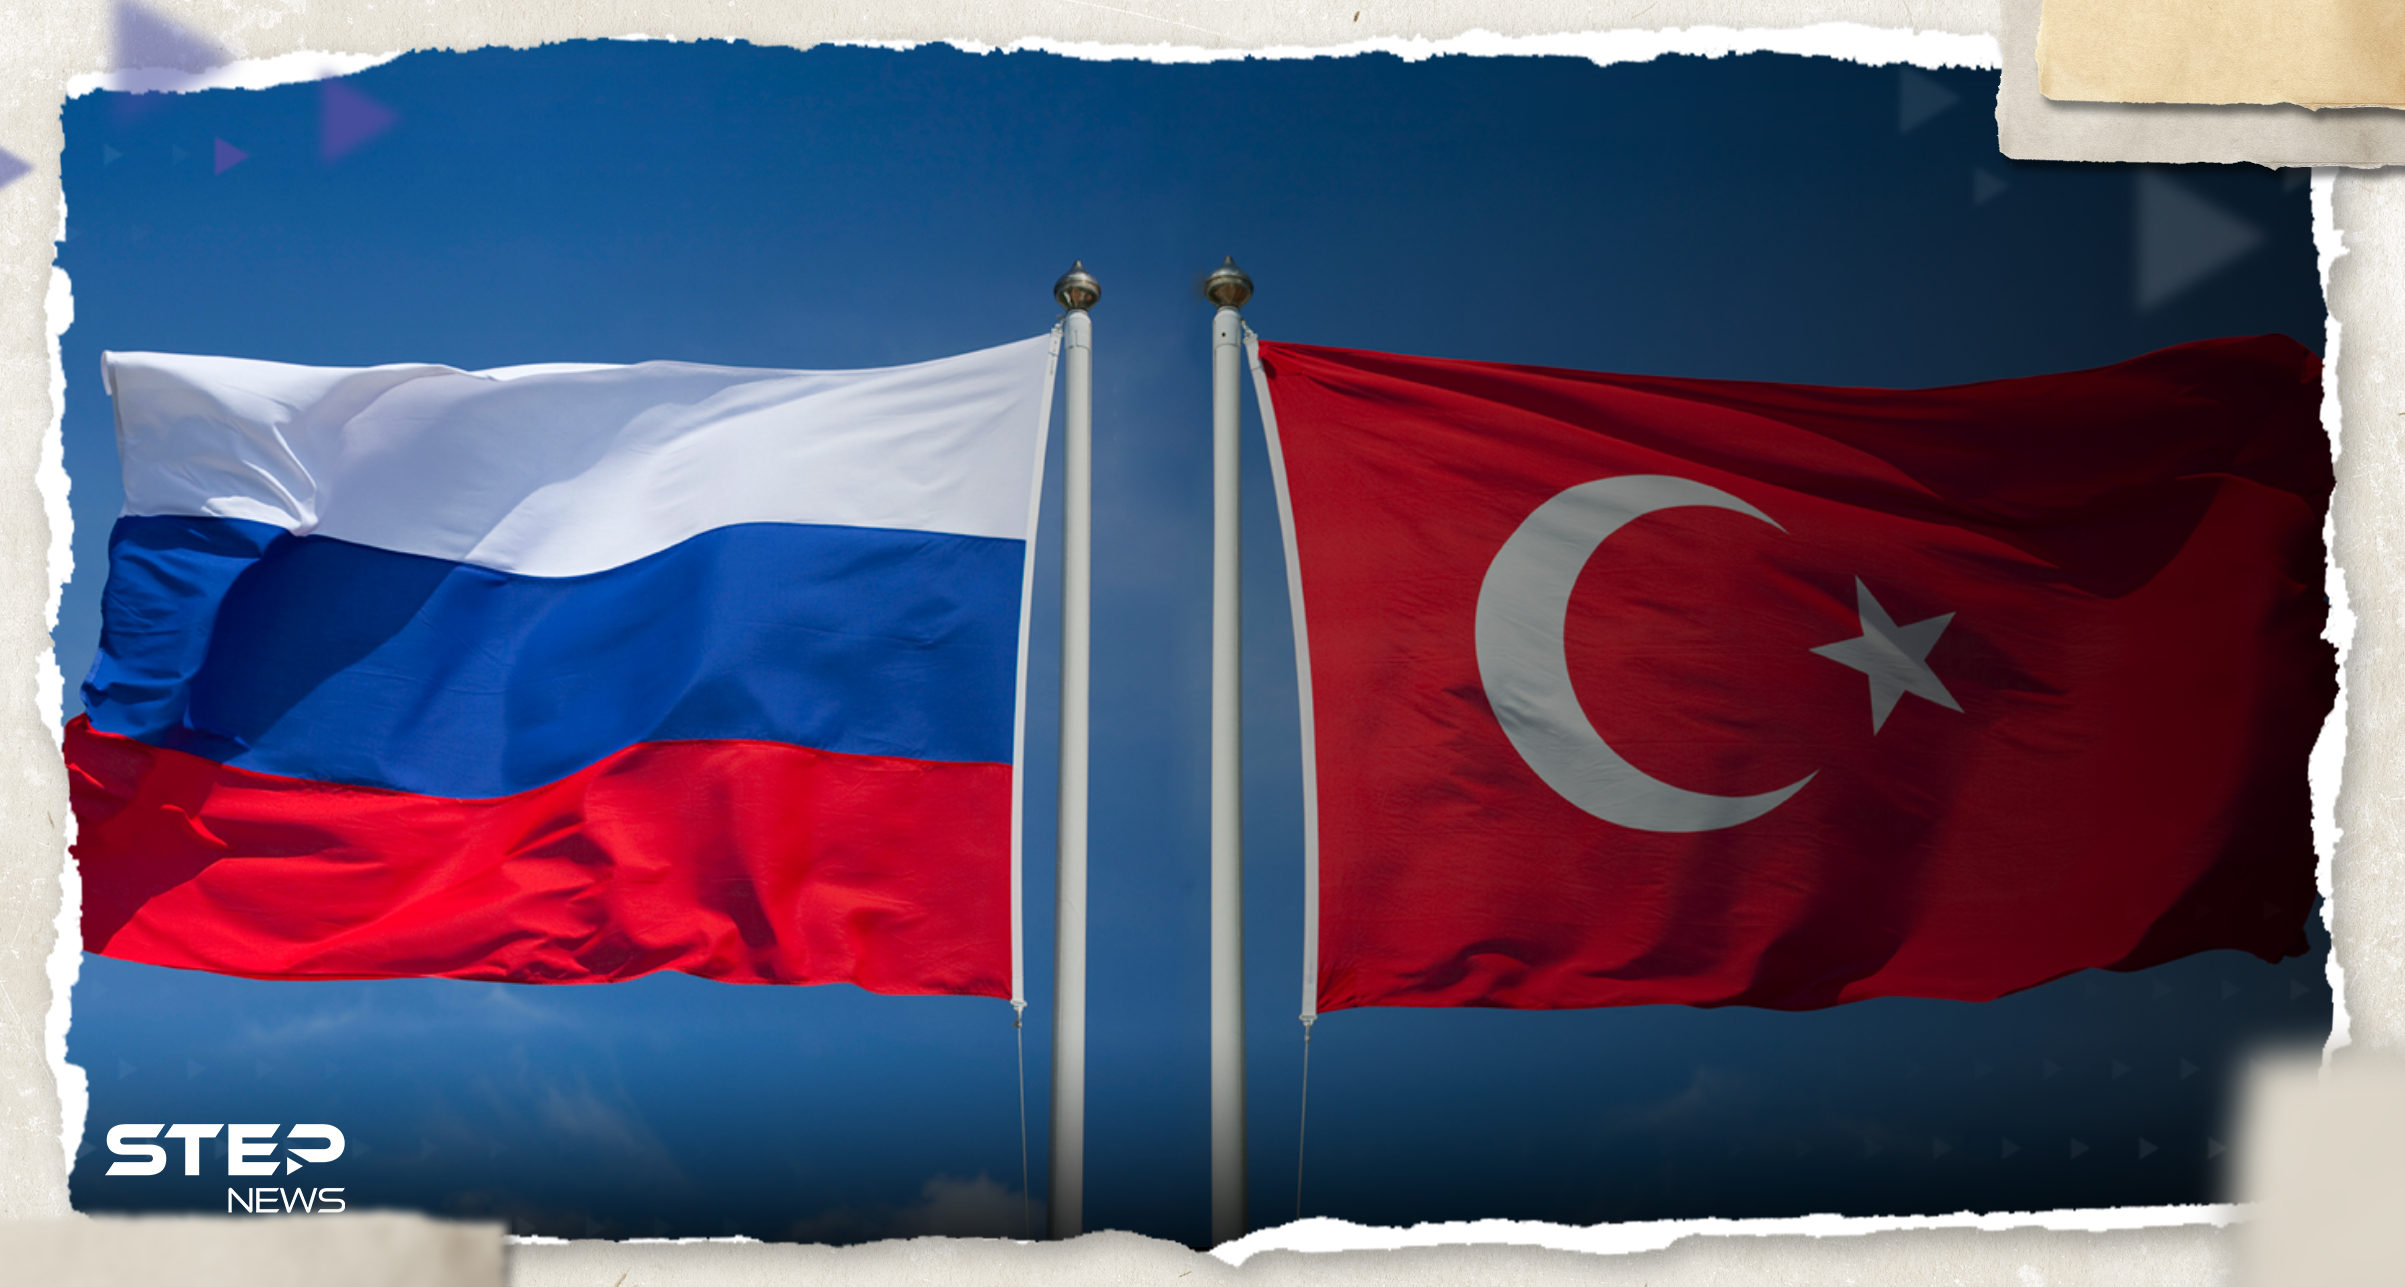 "ستفقد دور الوسيط".. روسيا تنتقد تركيا بسبب توريد أسلحة لأوكرانيا 